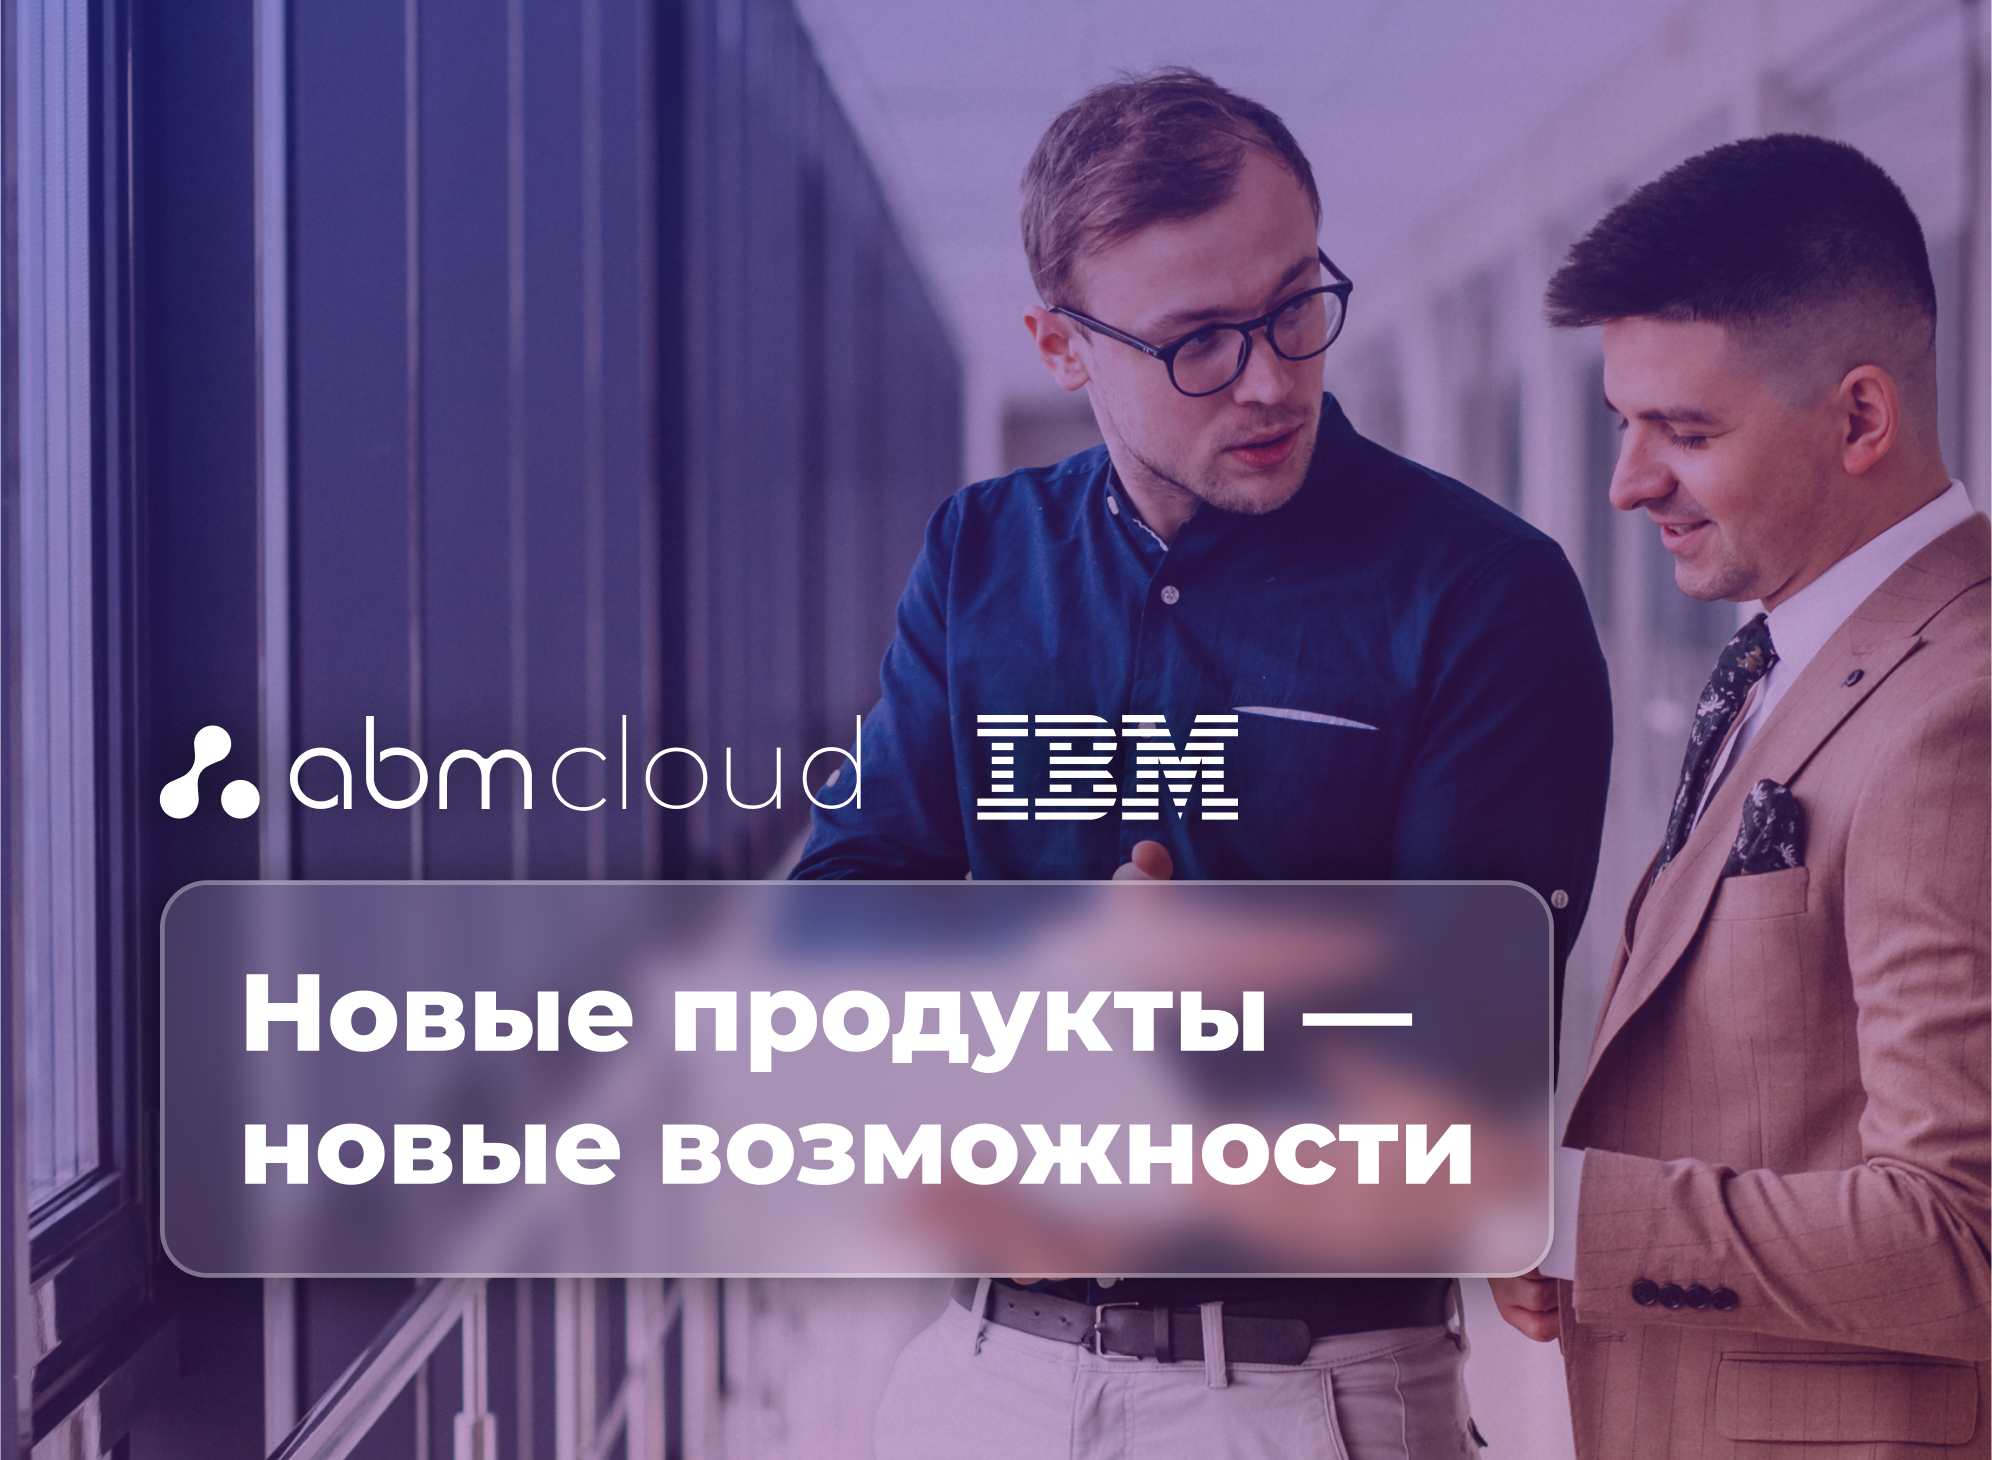 Партнерство ABM Cloud с международной компанией IBM!